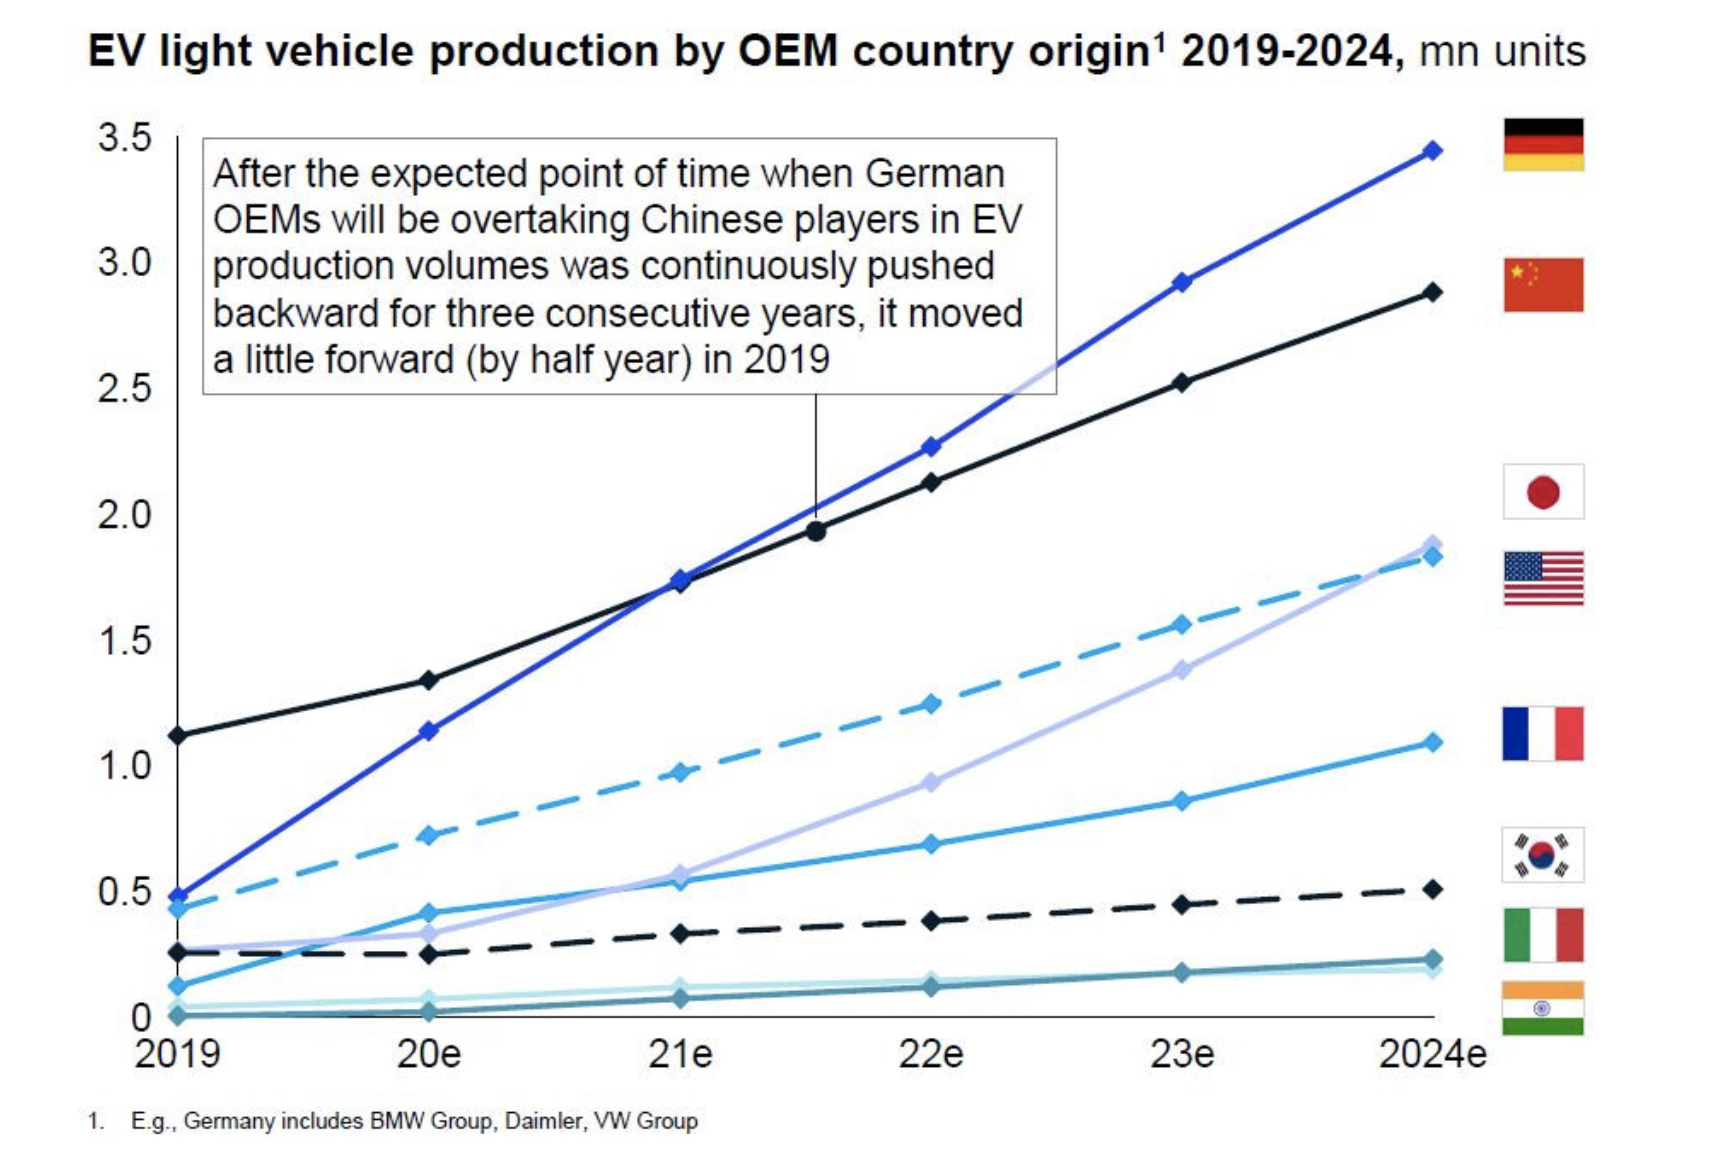 国际咨询公司麦肯锡（McKinsey）最新发布的报告预测，德国汽车制造商大众、宝马和戴姆勒将从2021年起超过中国，成为全球电动汽车市场的领导者。